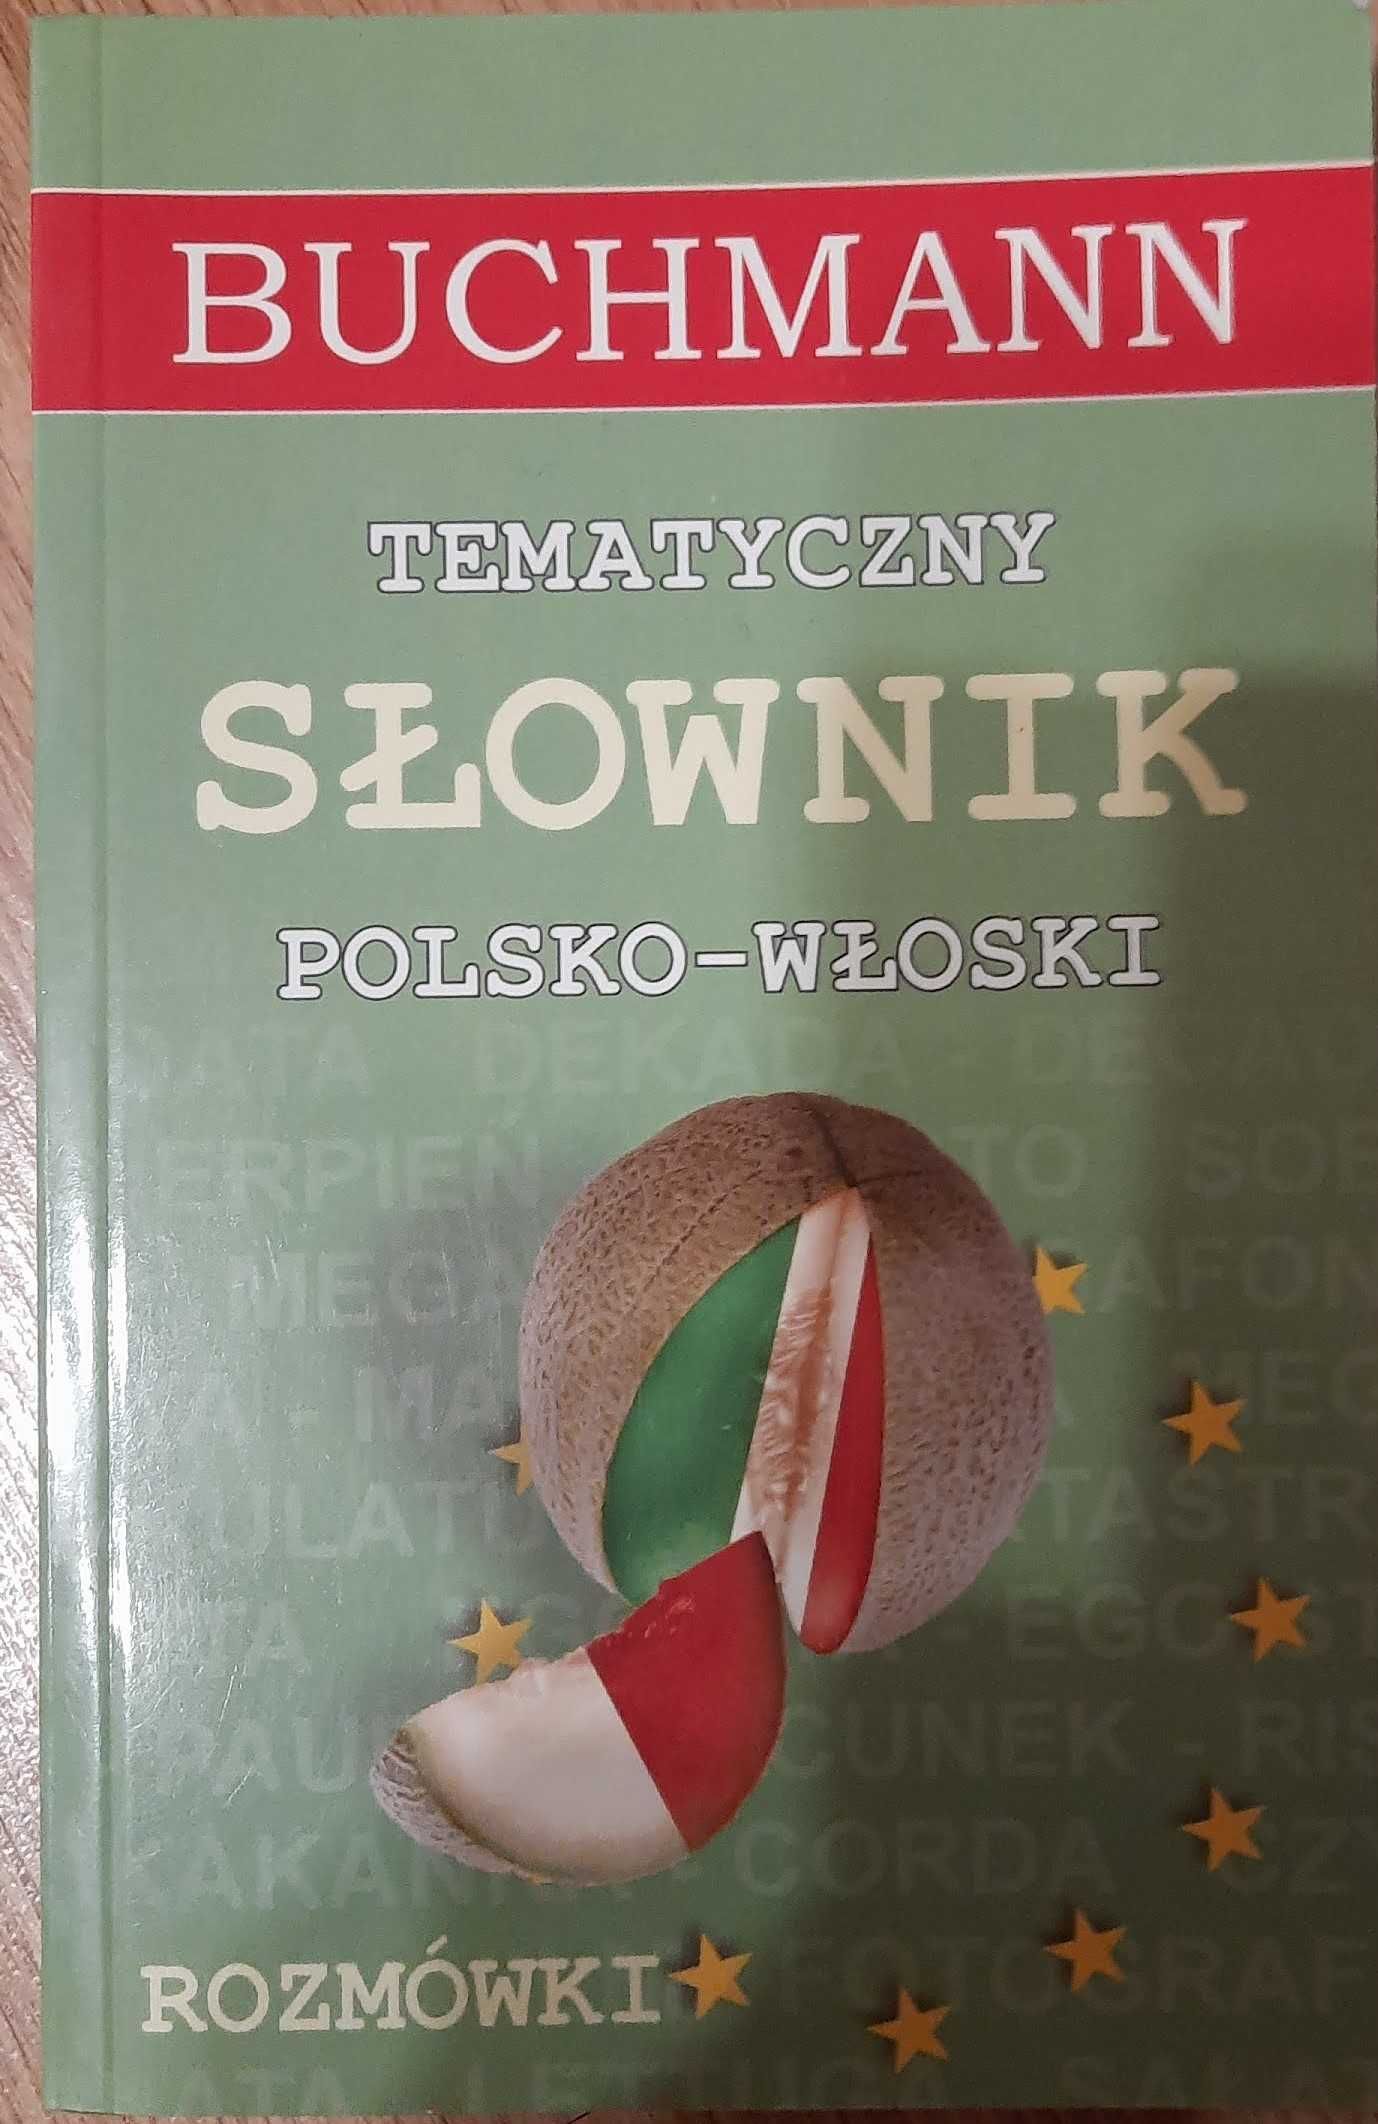 Tematyczny Słownik Polsko-Włoski, rozmówki